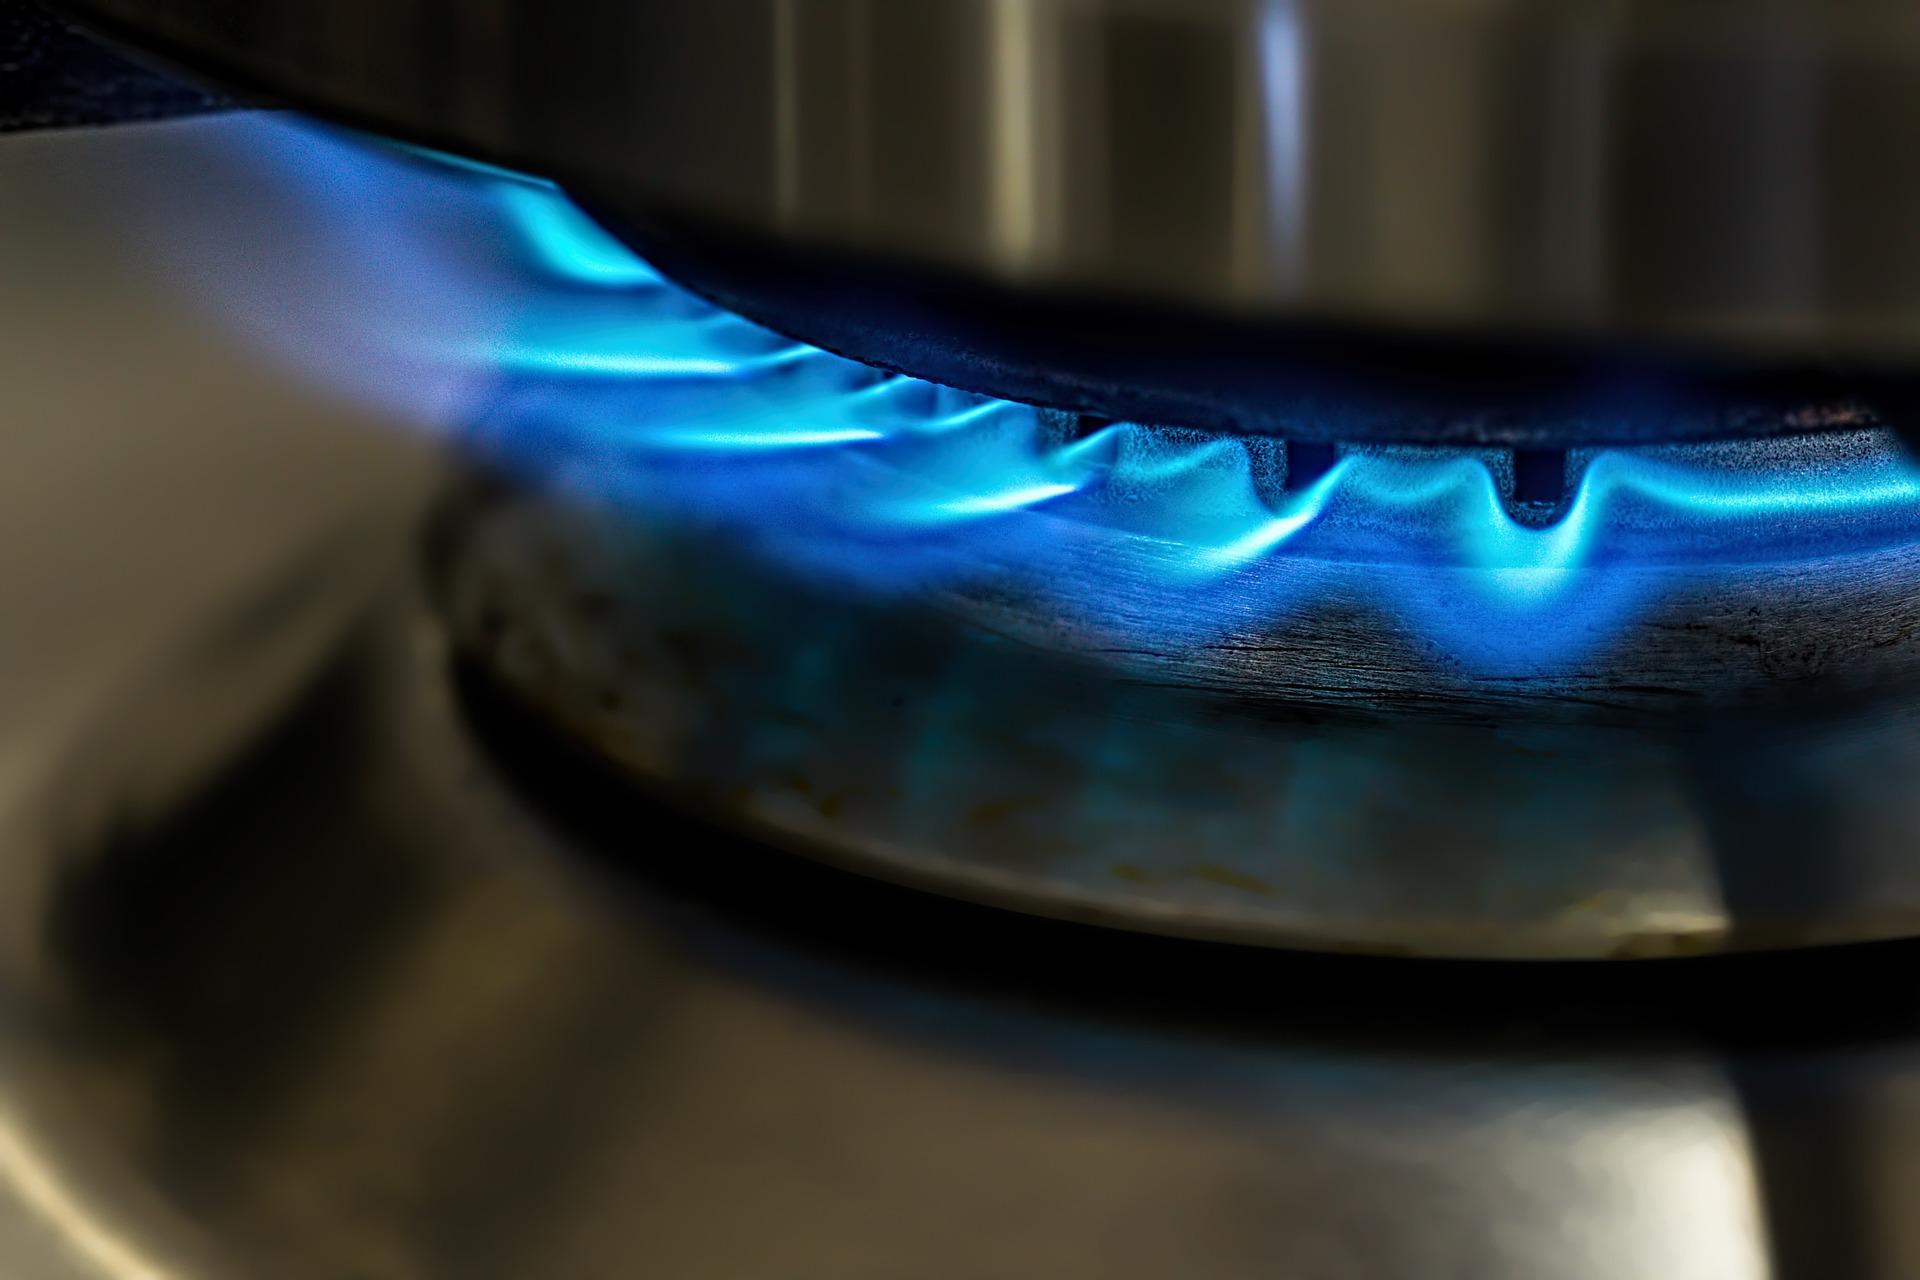 Agencia federal de EE.UU. considera la opción de prohibir las estufas de gas